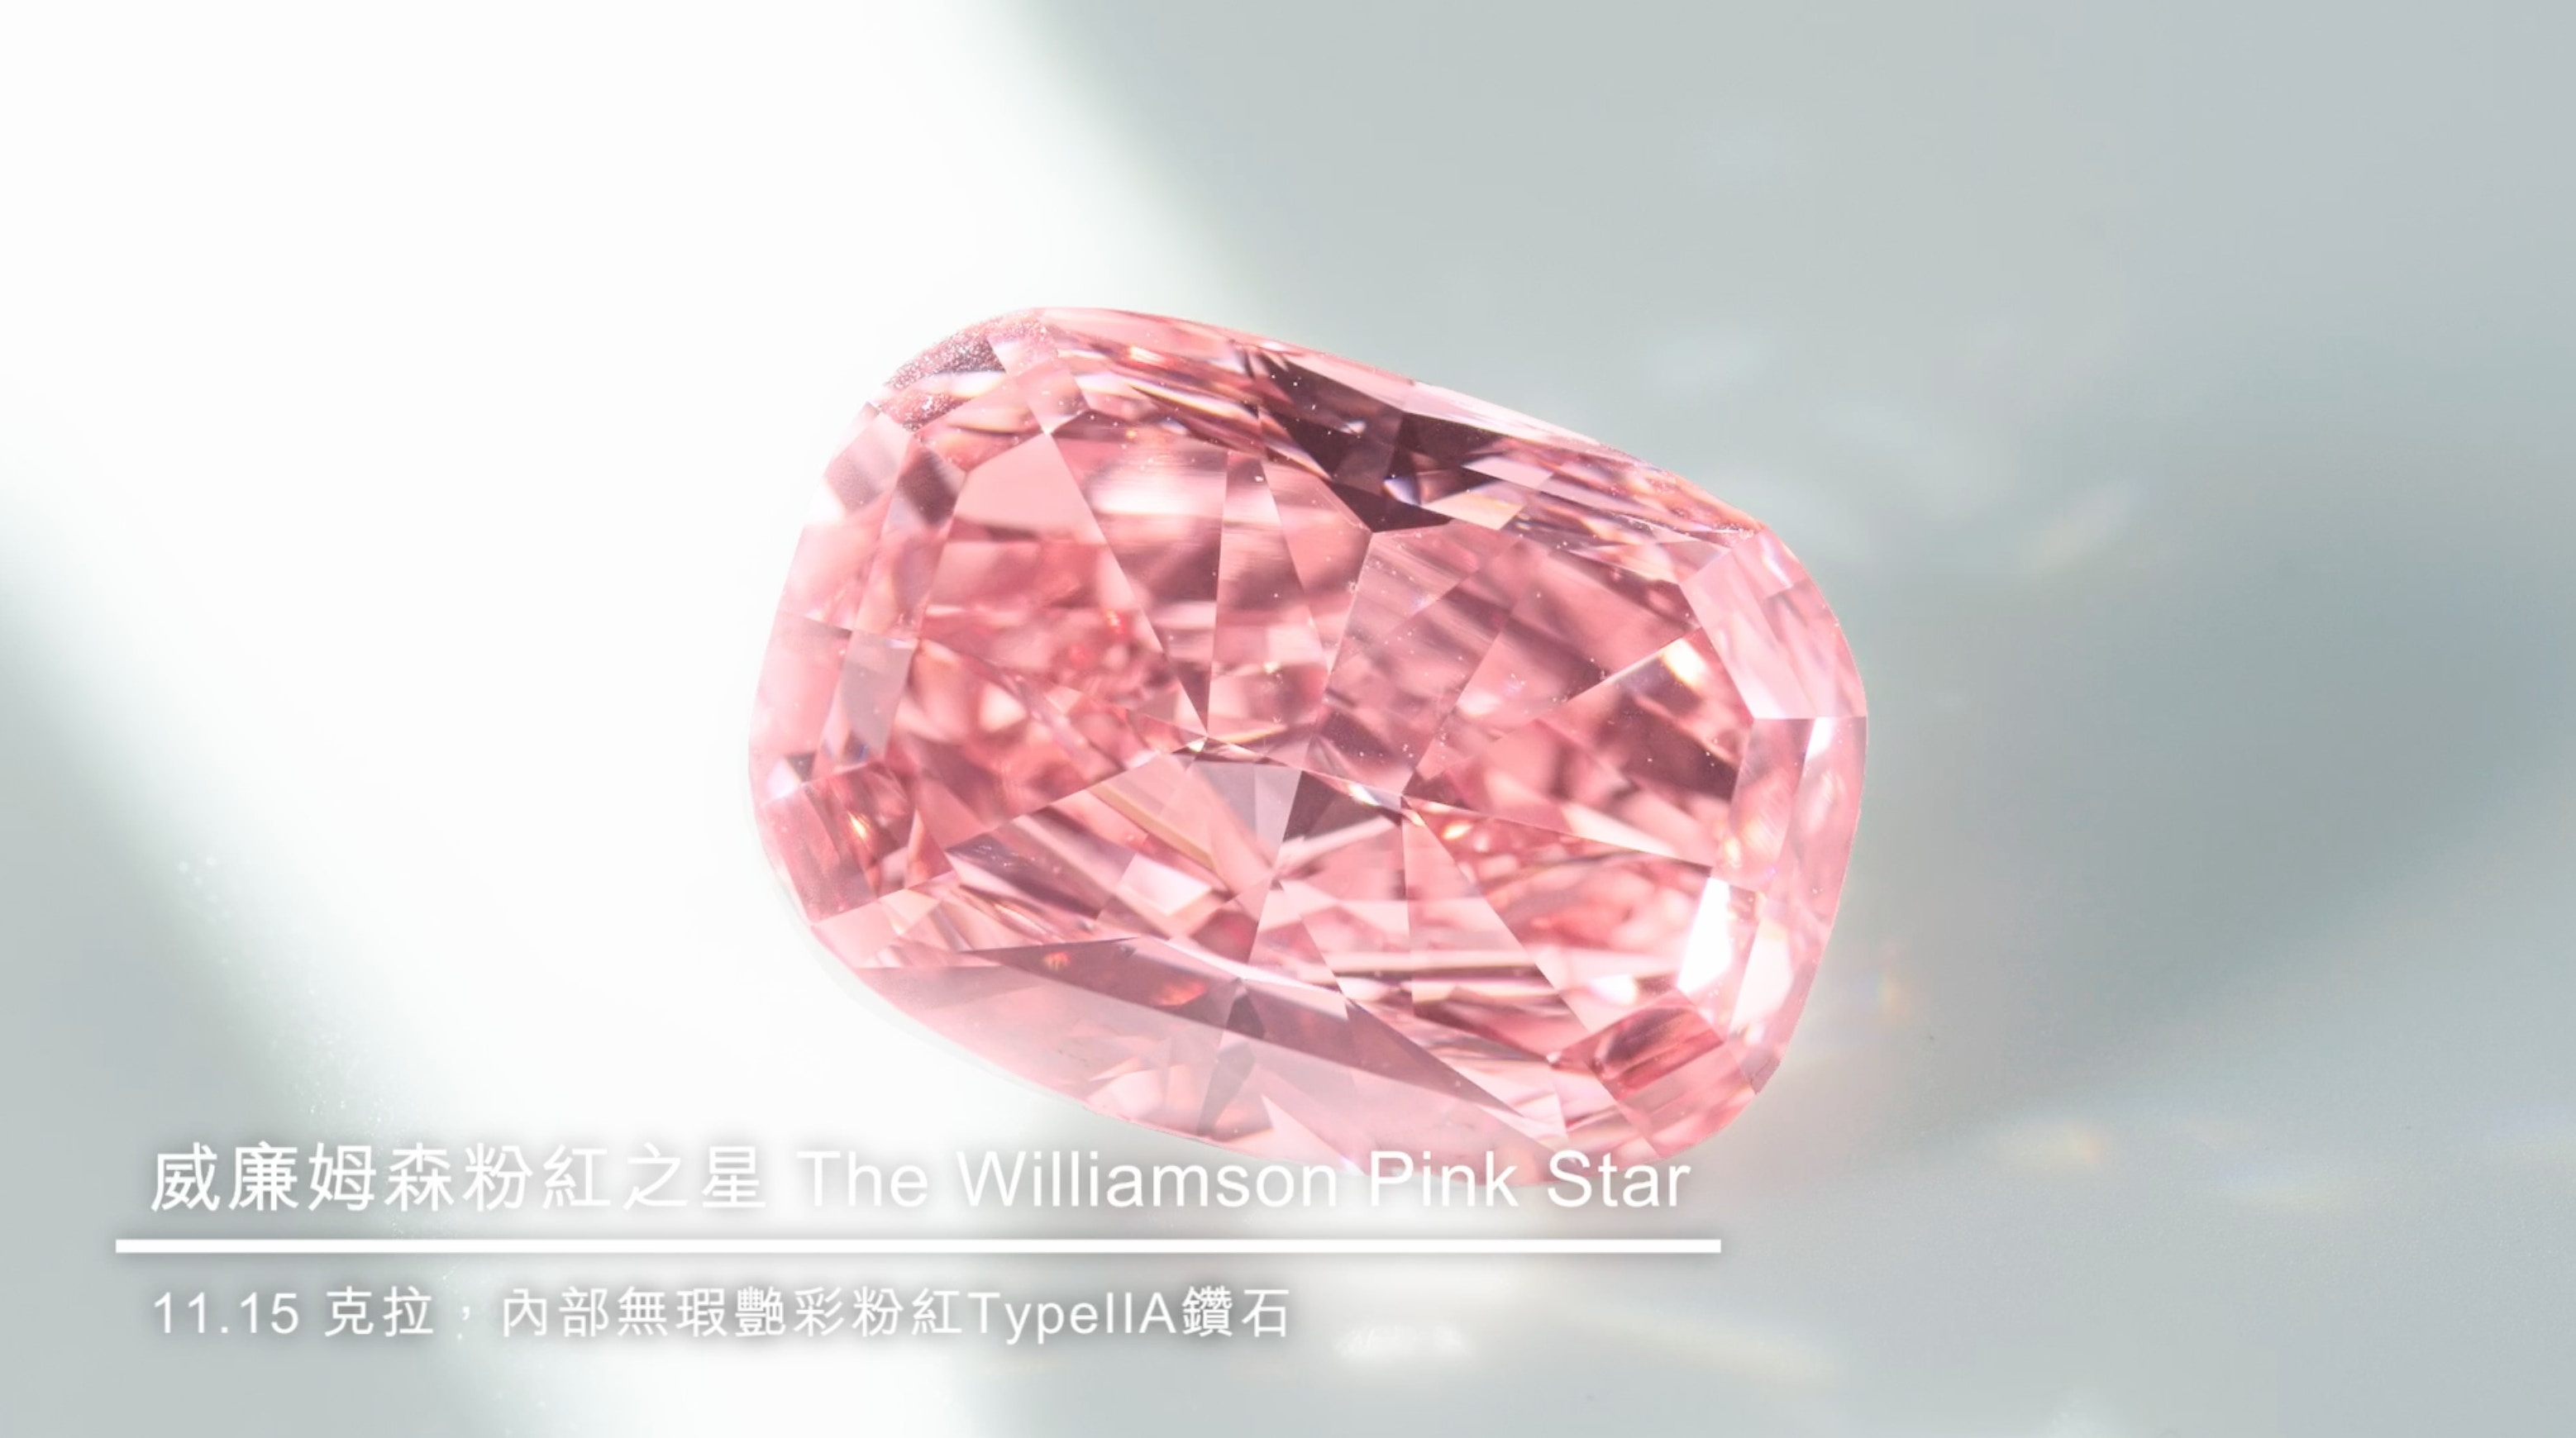 天價粉紅鑽以4.53億成交打破每克拉世界拍賣紀錄史上第二貴珠寶